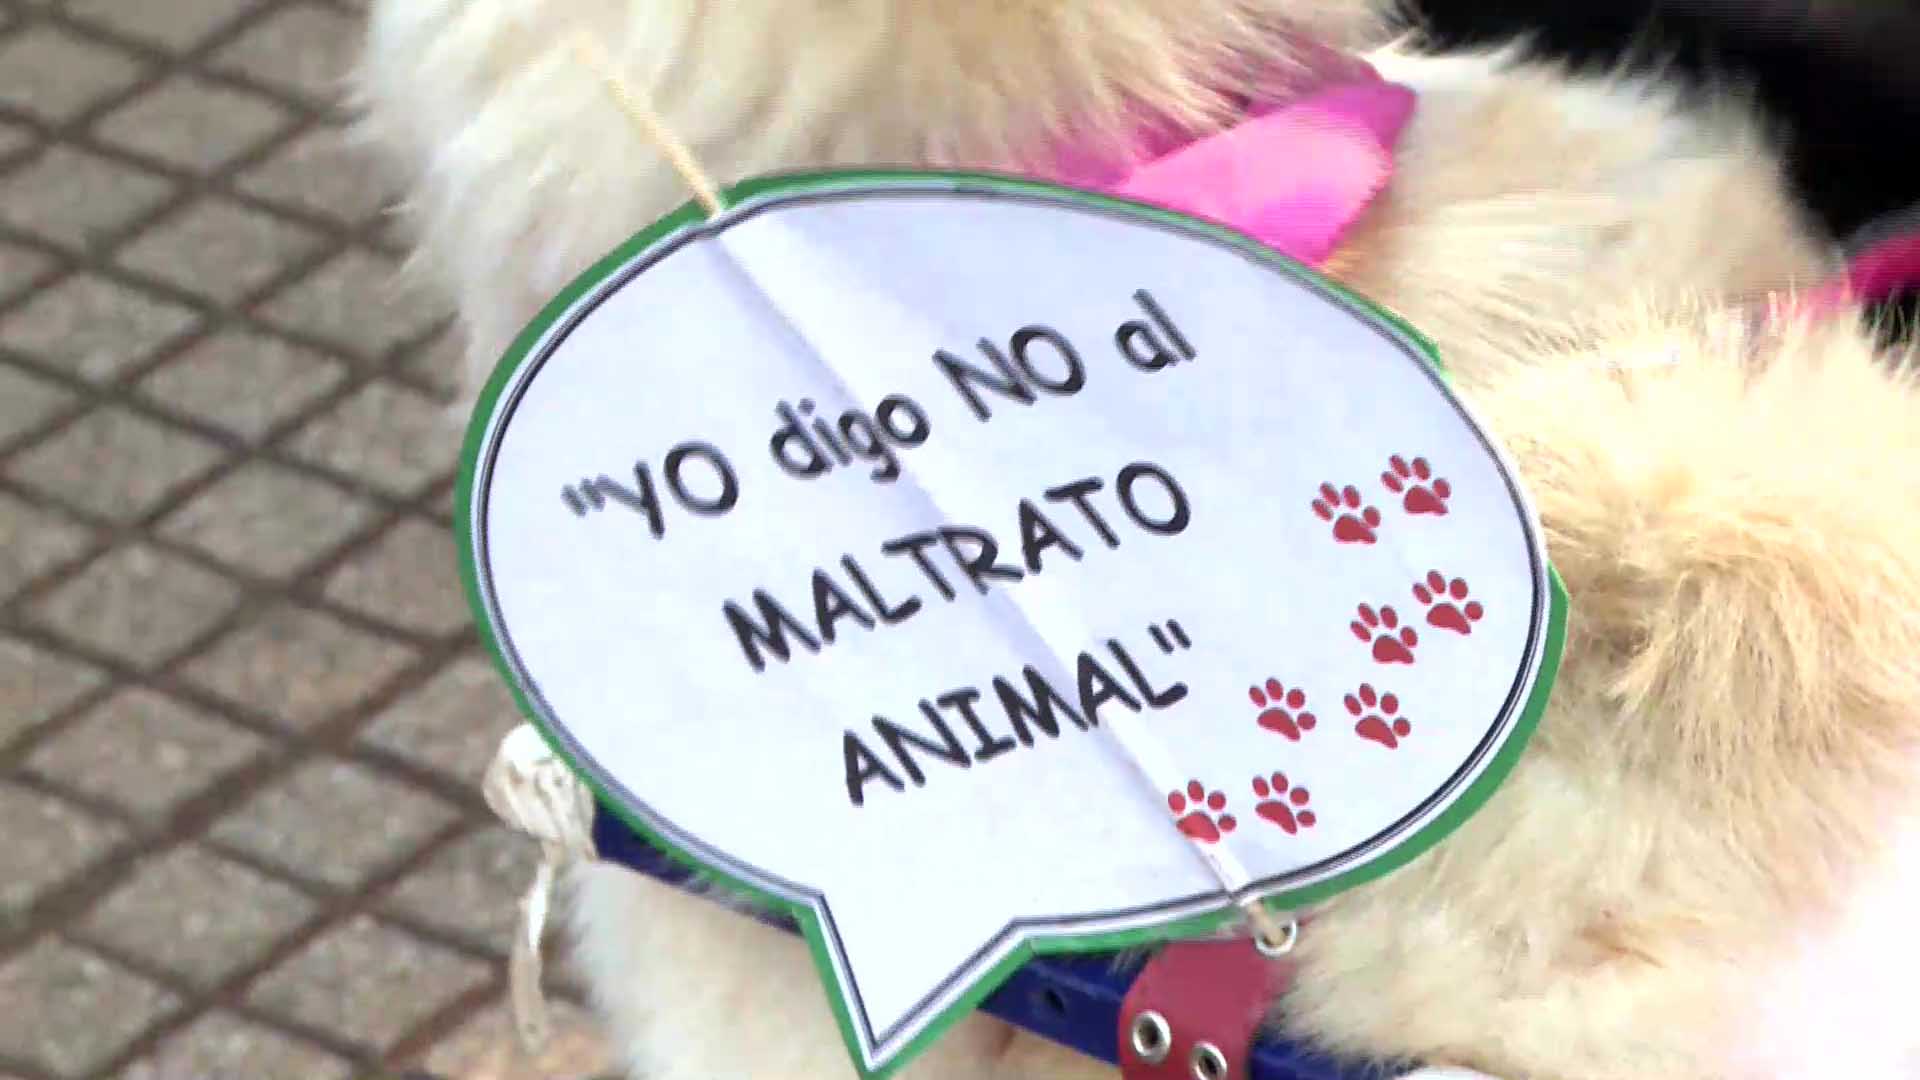 Maltrato animal: asociaciones claman justicia por la muerte de un perro